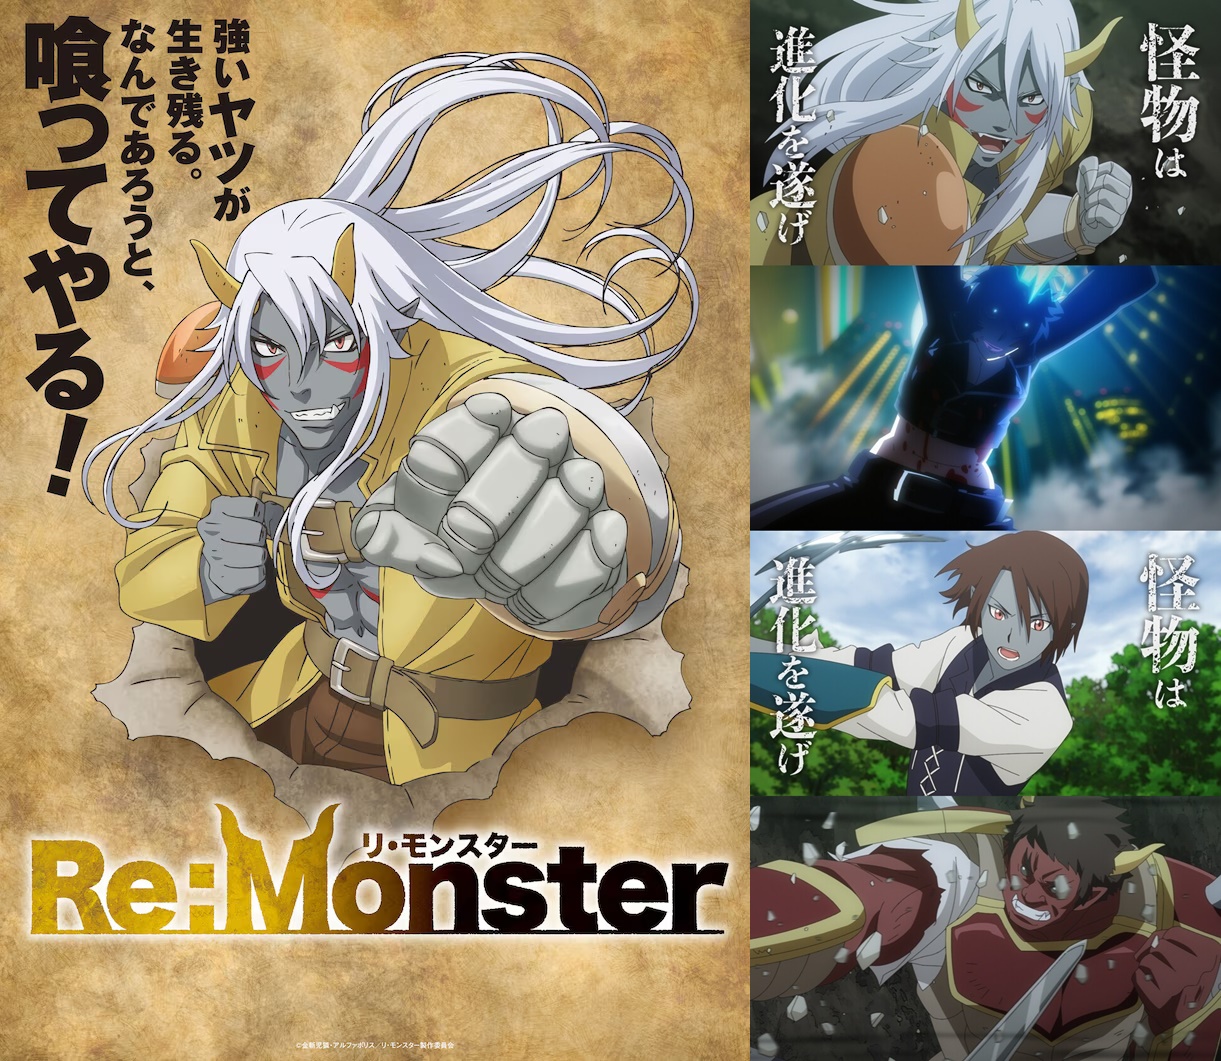 Re Monster ราชันชาติอสูร สร้างจากไลท์โนเวล แนวต่างโลก ผจญภัย